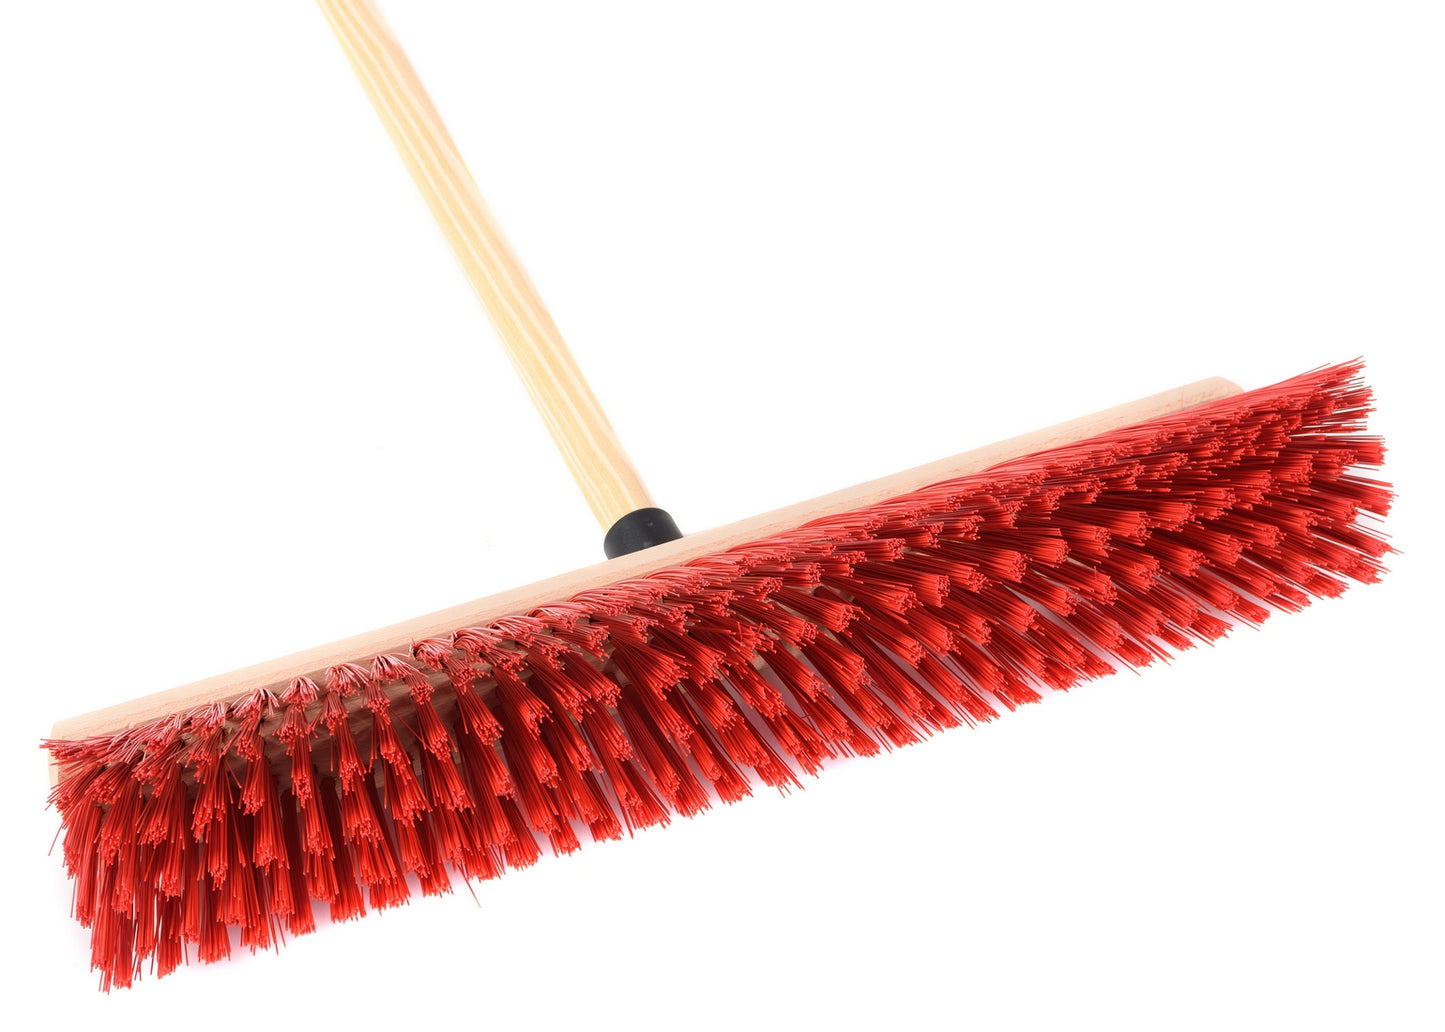 Professional street broom Eralon-Elaston bristles red plastic with handle broom handle workshop broom 